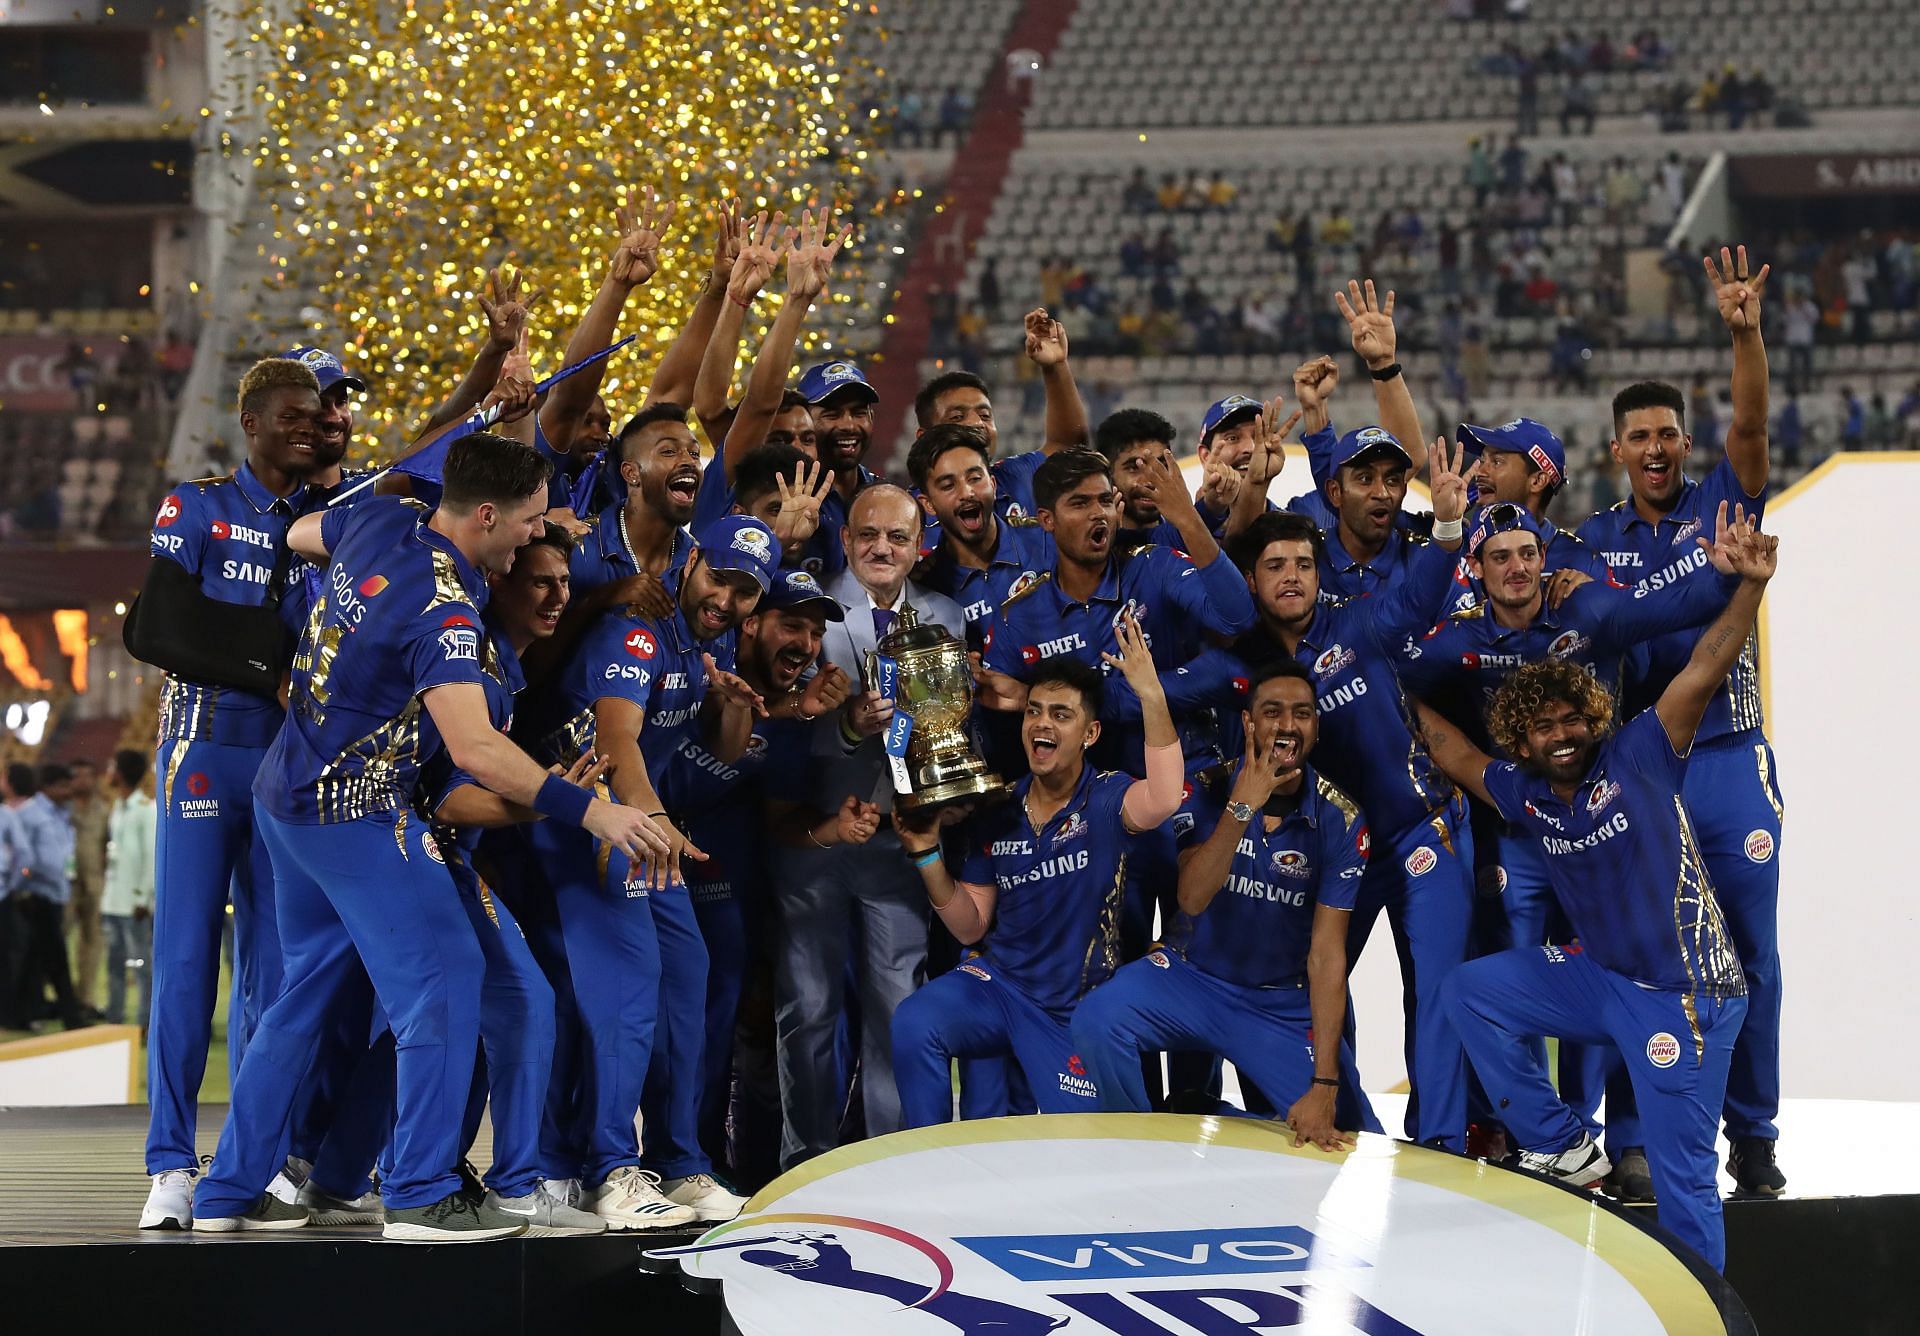 2019 IPL Final - Mumbai v Chennai (Image: Getty)